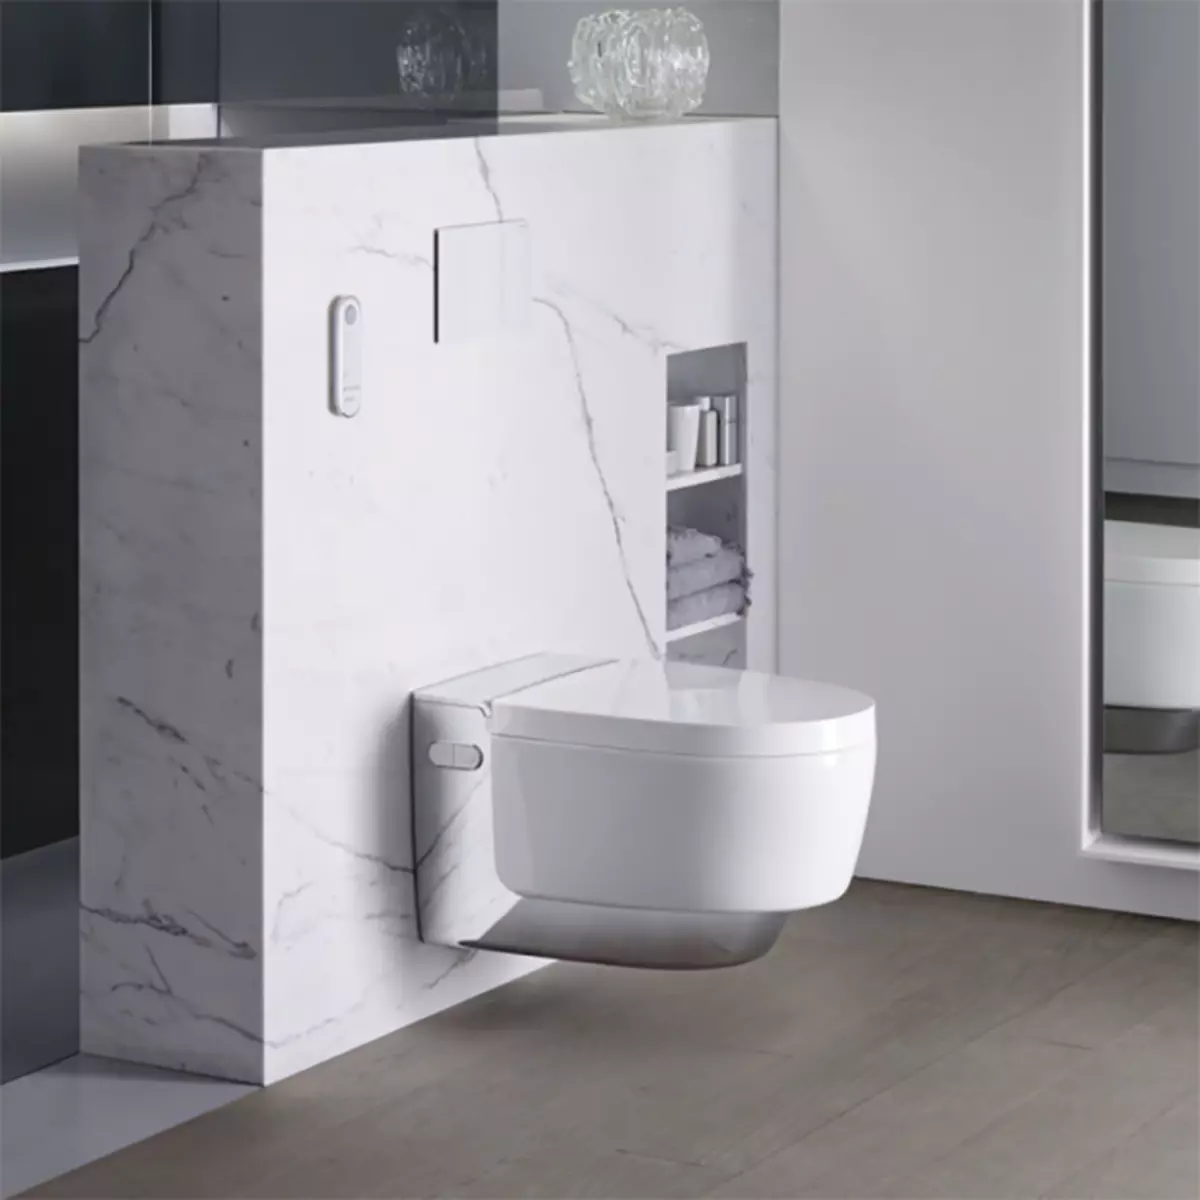 توالت هوشمند: انواع مدل های الکترونیکی با کنترل پنل. توالت های کره ای و توالت های دیگر تولید کنندگان 10467_18